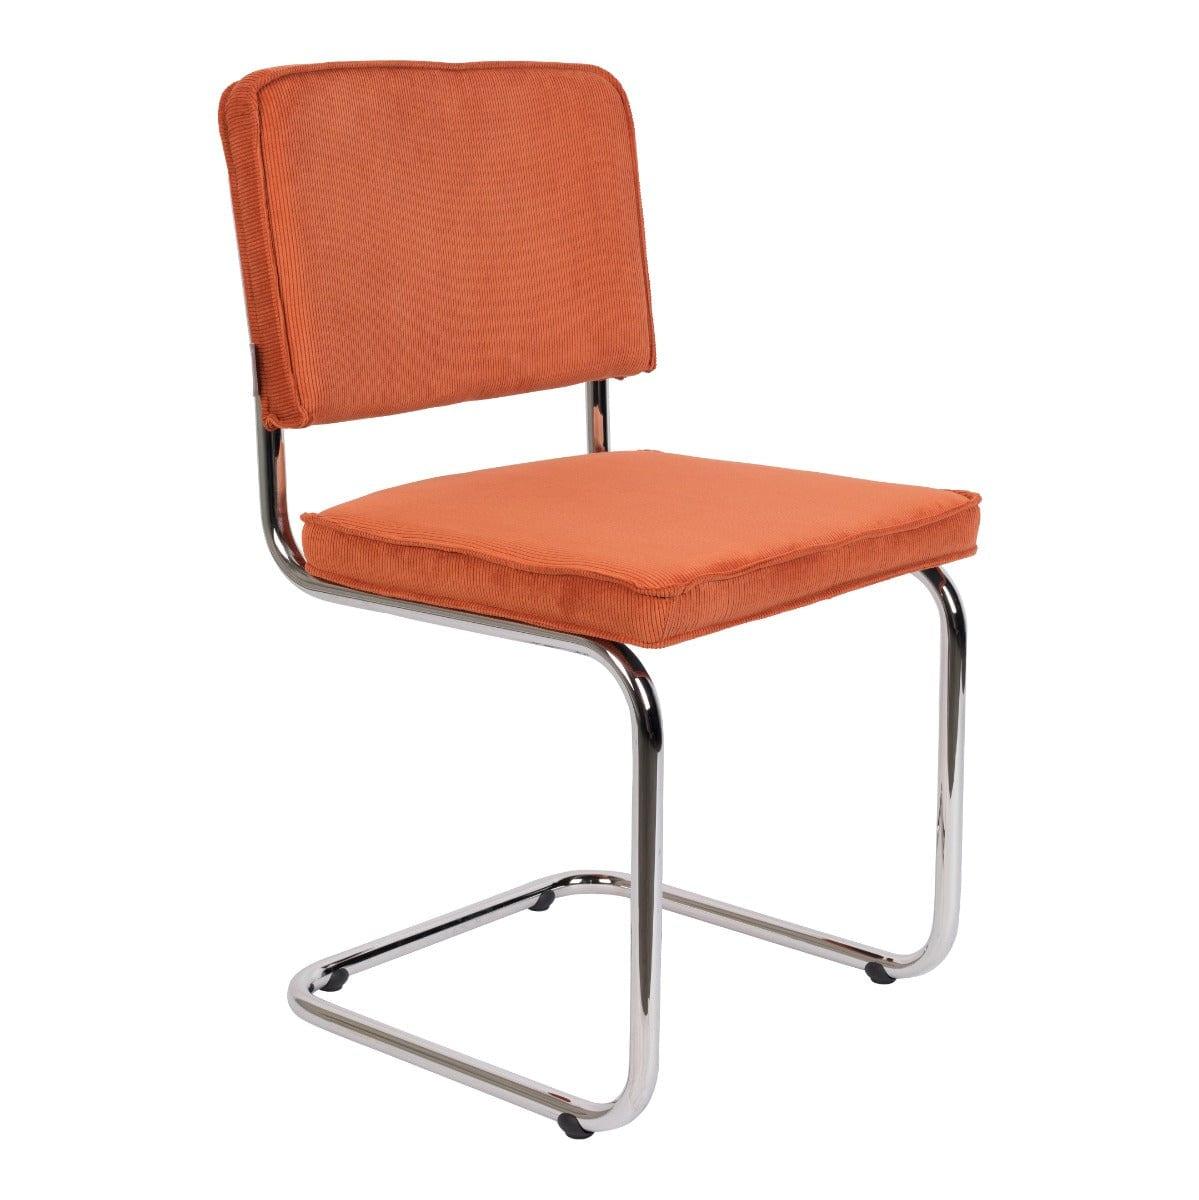 Krzesło Ridge Brushed RIB to projekt, który ma nostalgiczny charakter, ale dzięki zastosowanym materiałom jest ono zawsze na czasie i w modzie. Sztruksowe wykończenie zapewnia wyjątkową wygodę korzystania.  Wysoka jakość użytych materiałów zapewnia, że ten mebel zostanie na długie lata w klasycznej jadalni oraz w minimalistycznym biurze. Dzięki prostemu wyglądowi, siedzenie nie przytłacza pomieszczenia, a wręcz wprowadza w nie nieco przytulności.